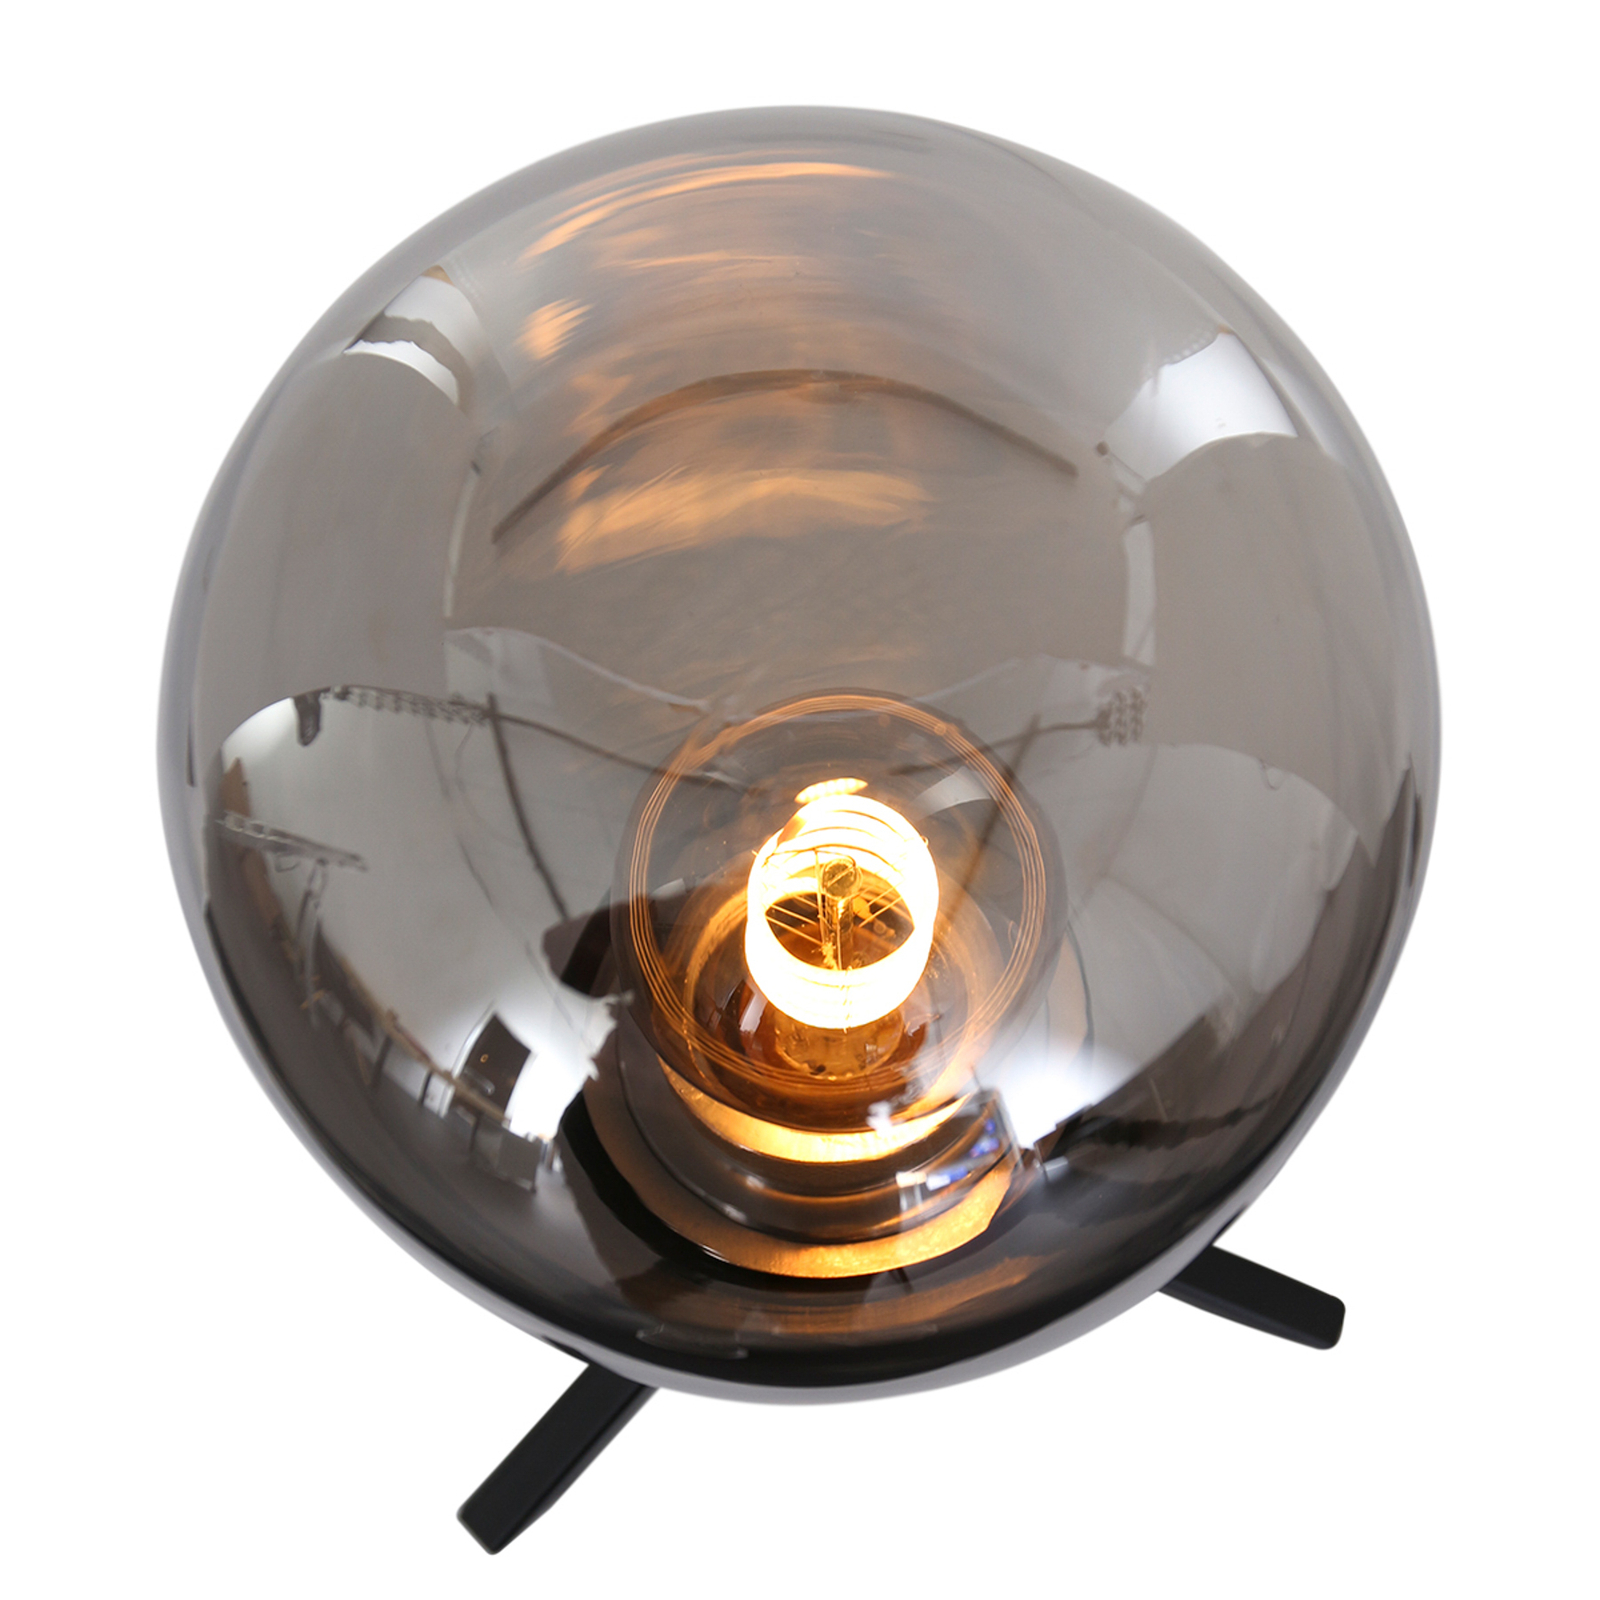 Lampa stołowa Reflexion, Ø 15 cm, wysokość 28 cm